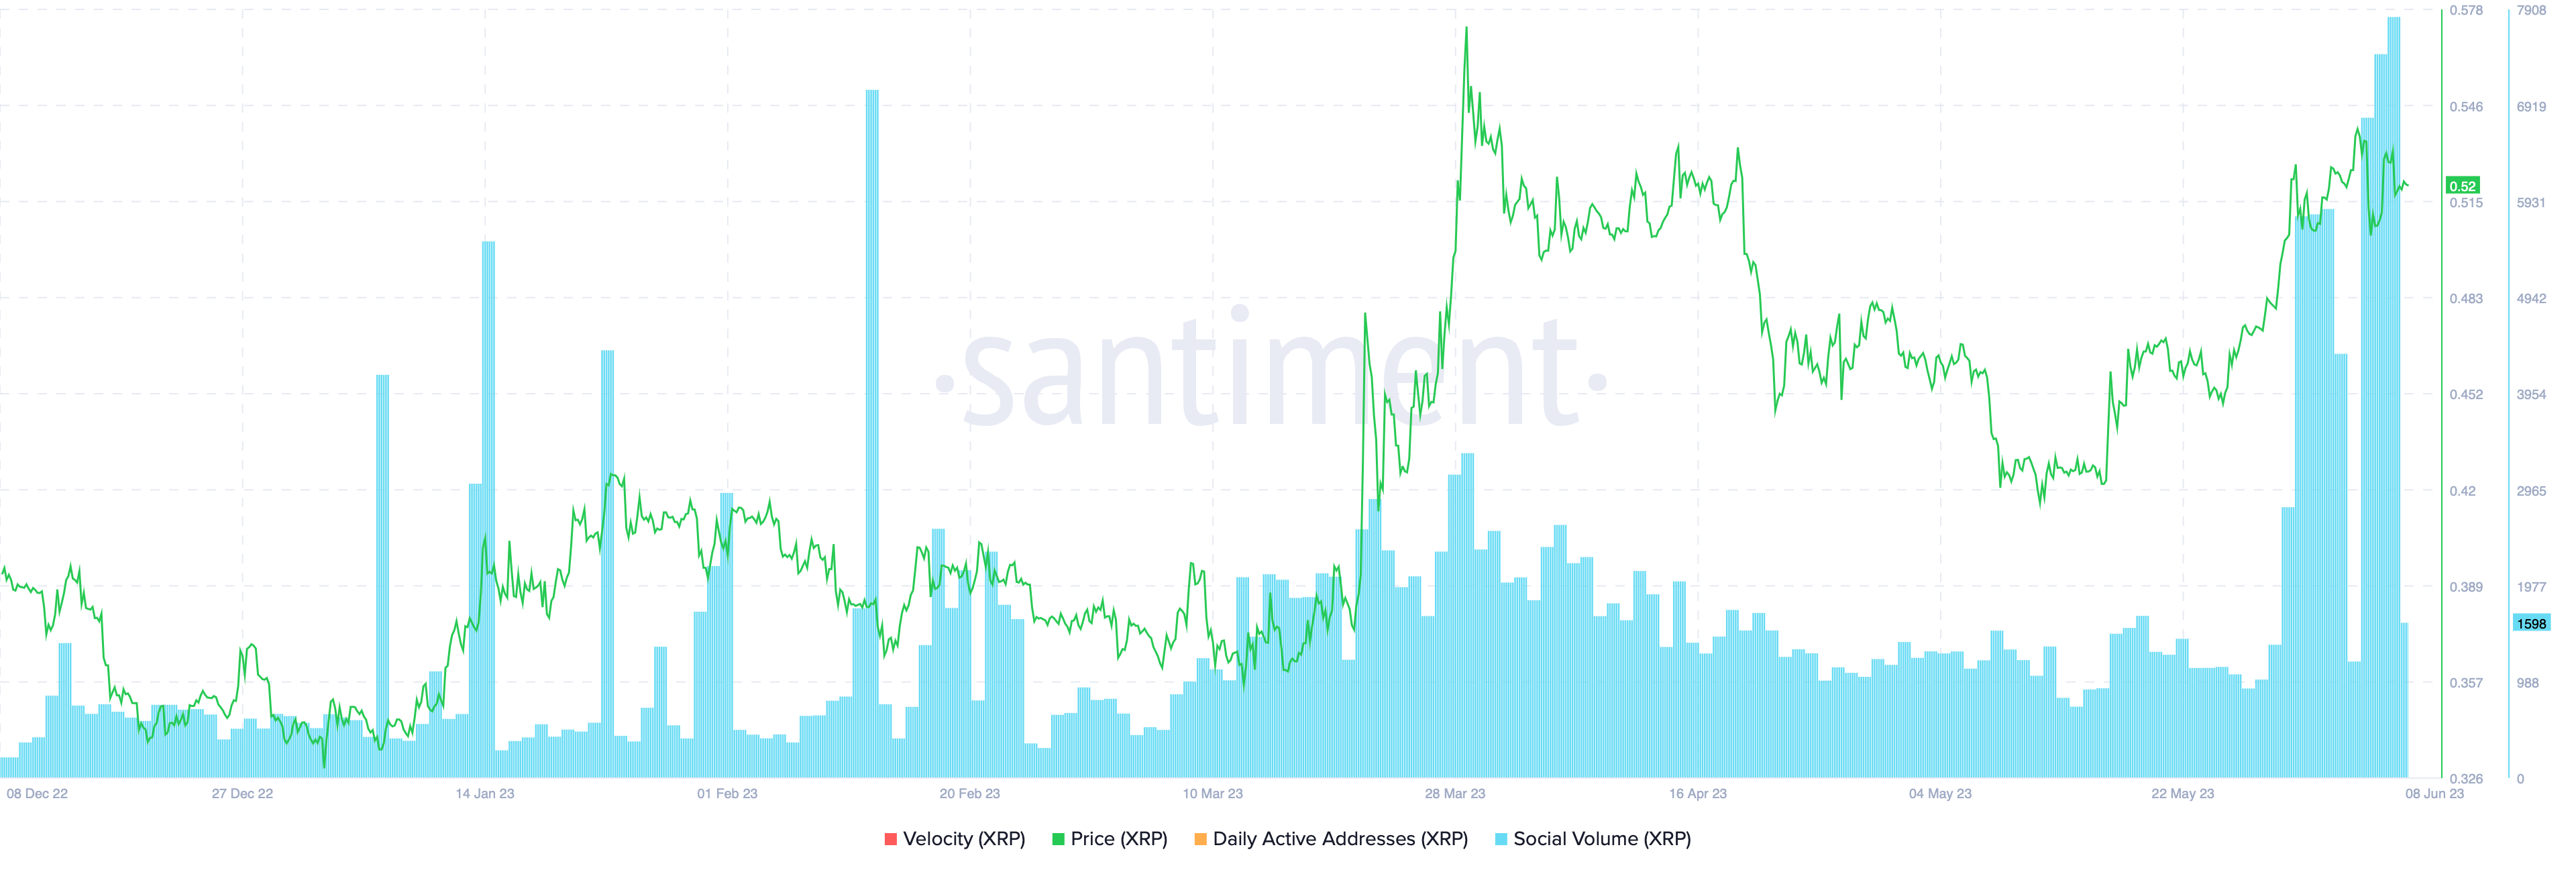 XRP social volume (blue bars) vs. price (green line) as seen on Sentiment